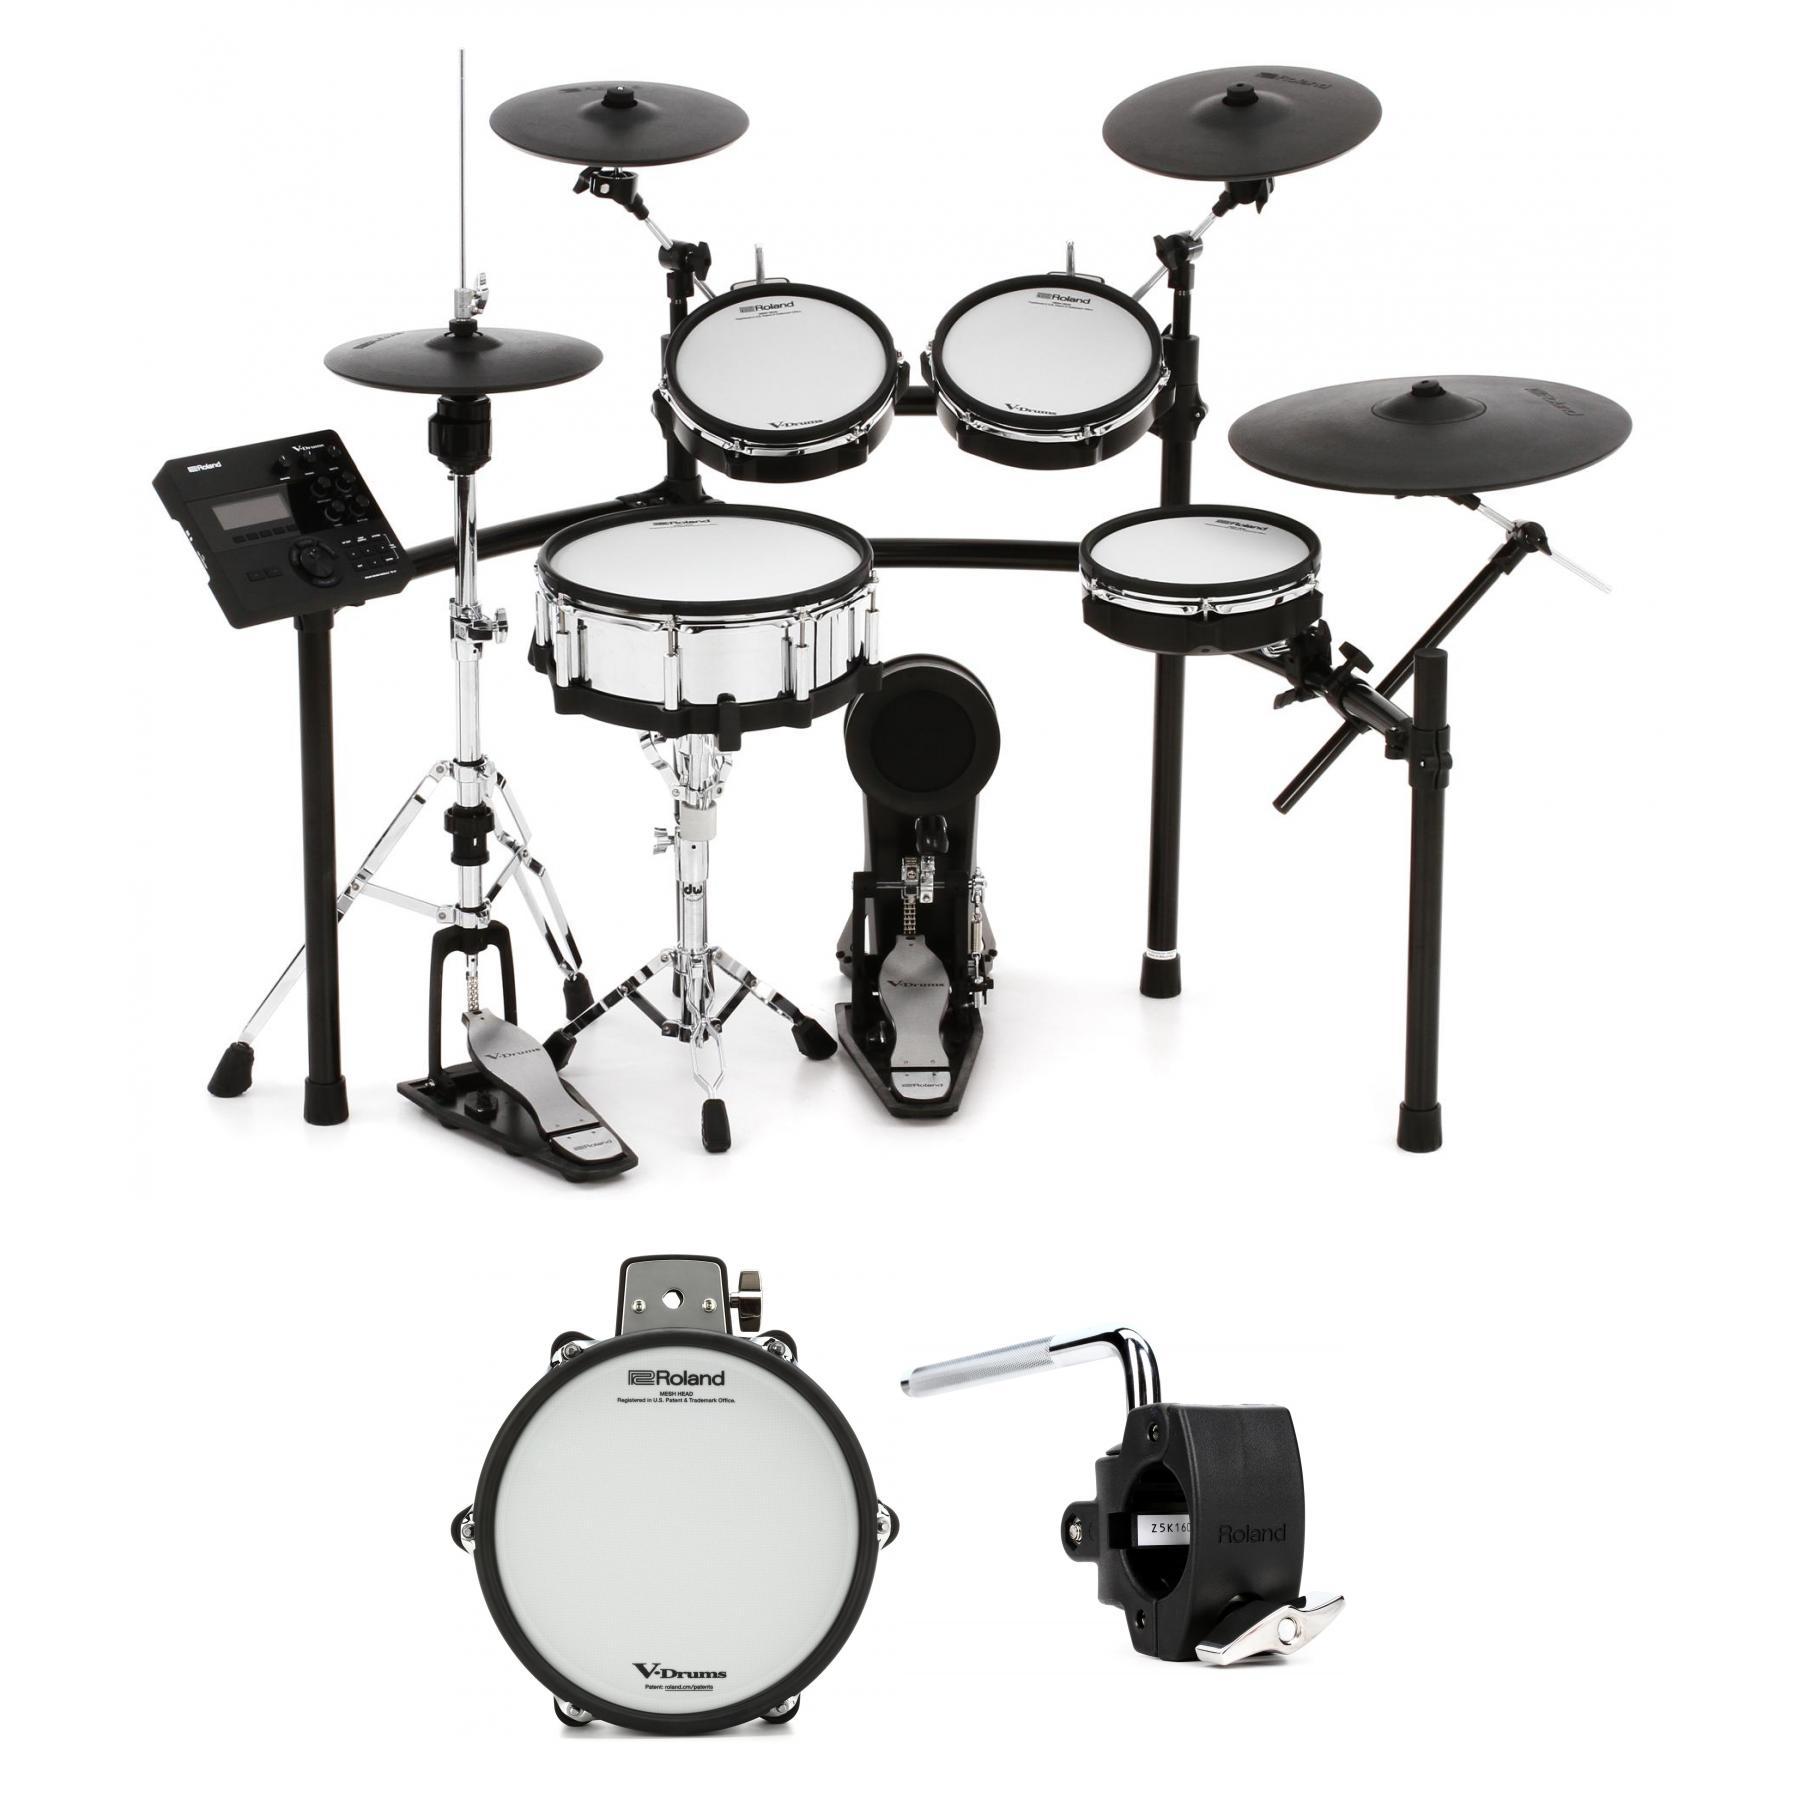 Roland V-Drums TD-27KV Electronic Drum Set 6-Piece Bundle